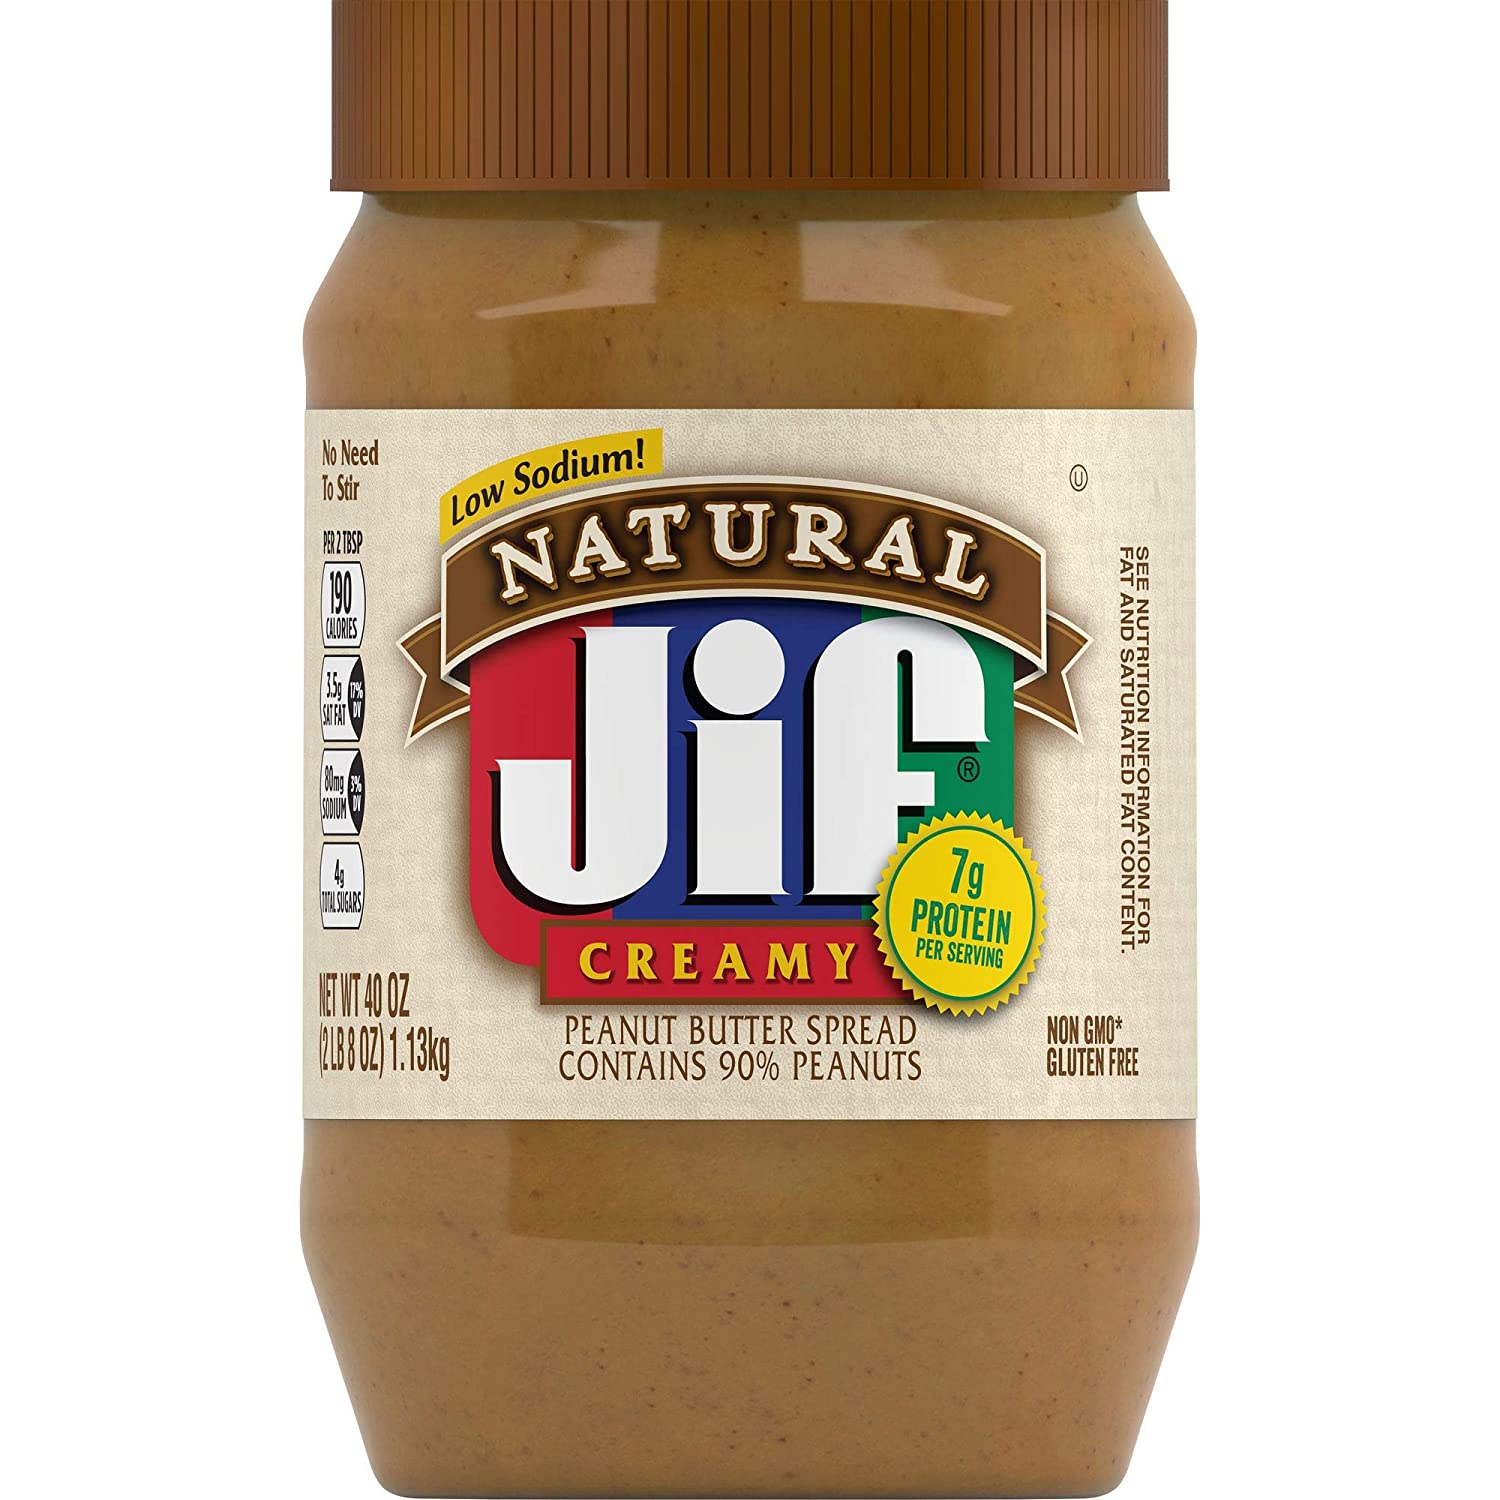 jif peanut butter